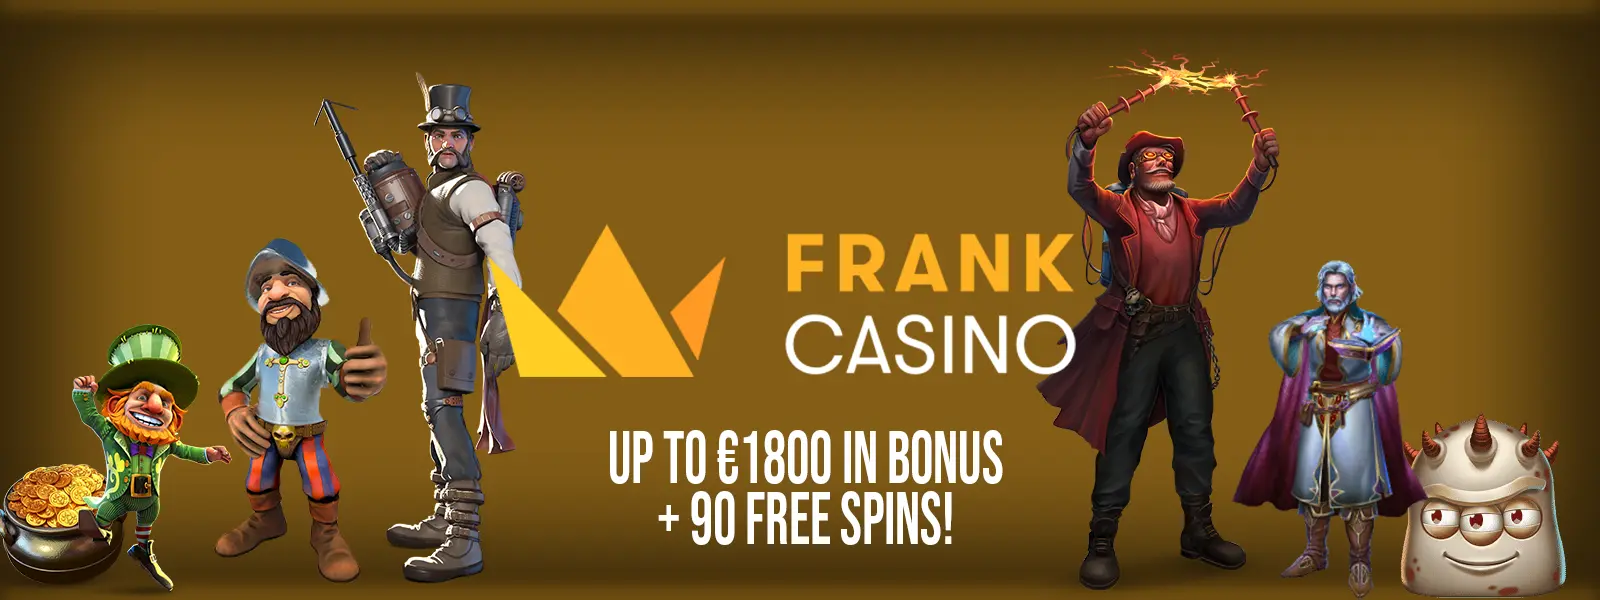 Frank Casino Header